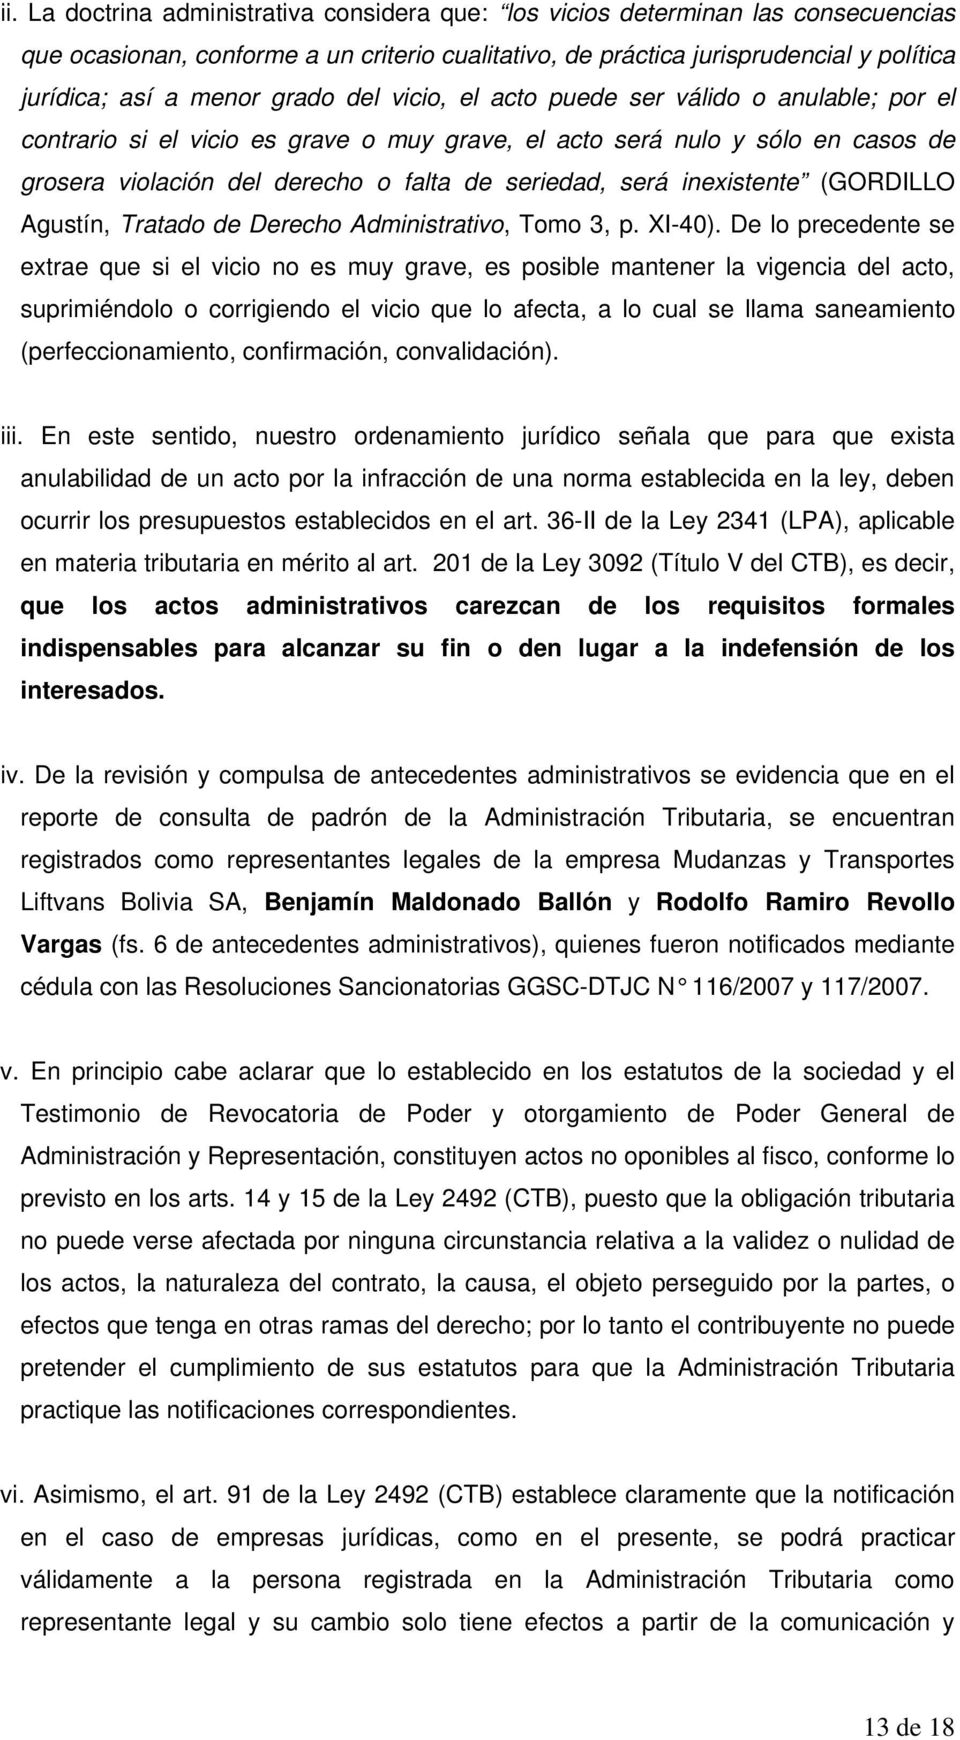 inexistente (GORDILLO Agustín, Tratado de Derecho Administrativo, Tomo 3, p. XI-40).